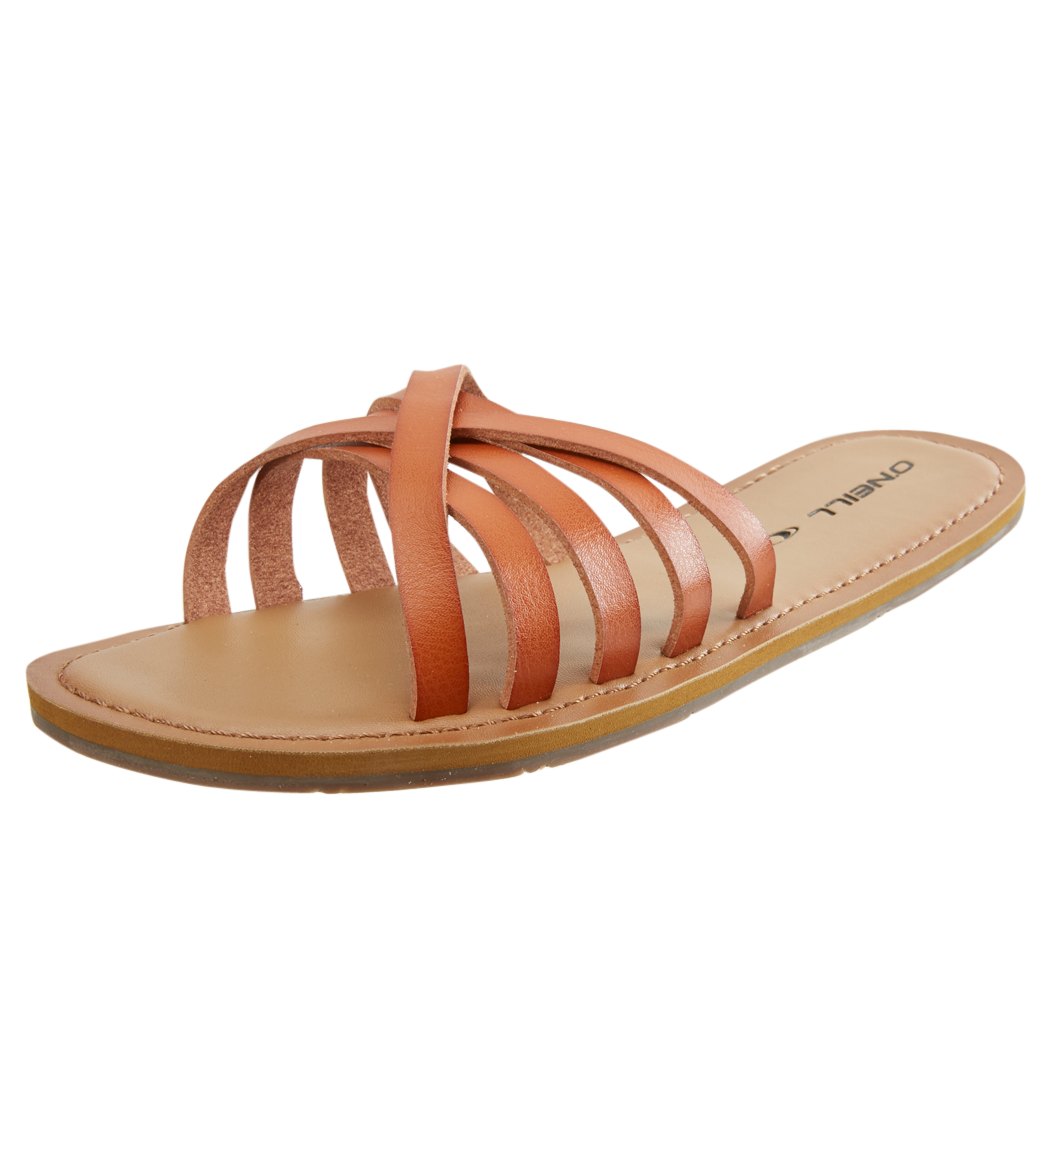 O'neill Women's Balboa Slides Sandals - Cognac 10 - Swimoutlet.com